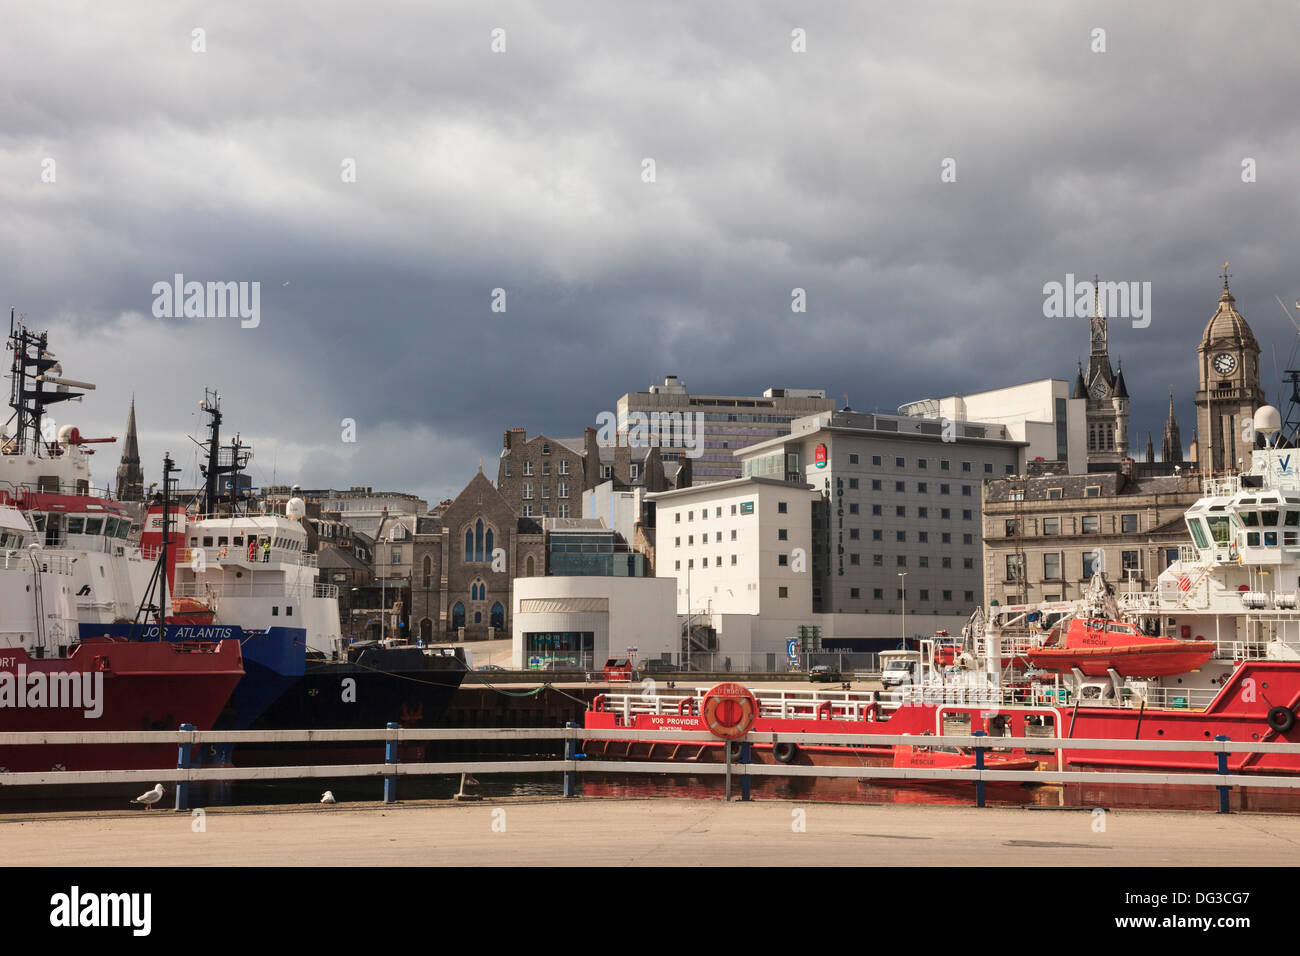 Les bâtiments du centre-ville et l'hôtel Ibis du port avec les navires de ravitaillement en mer de la mer du Nord dans le dock à Aberdeen Scotland UK Banque D'Images